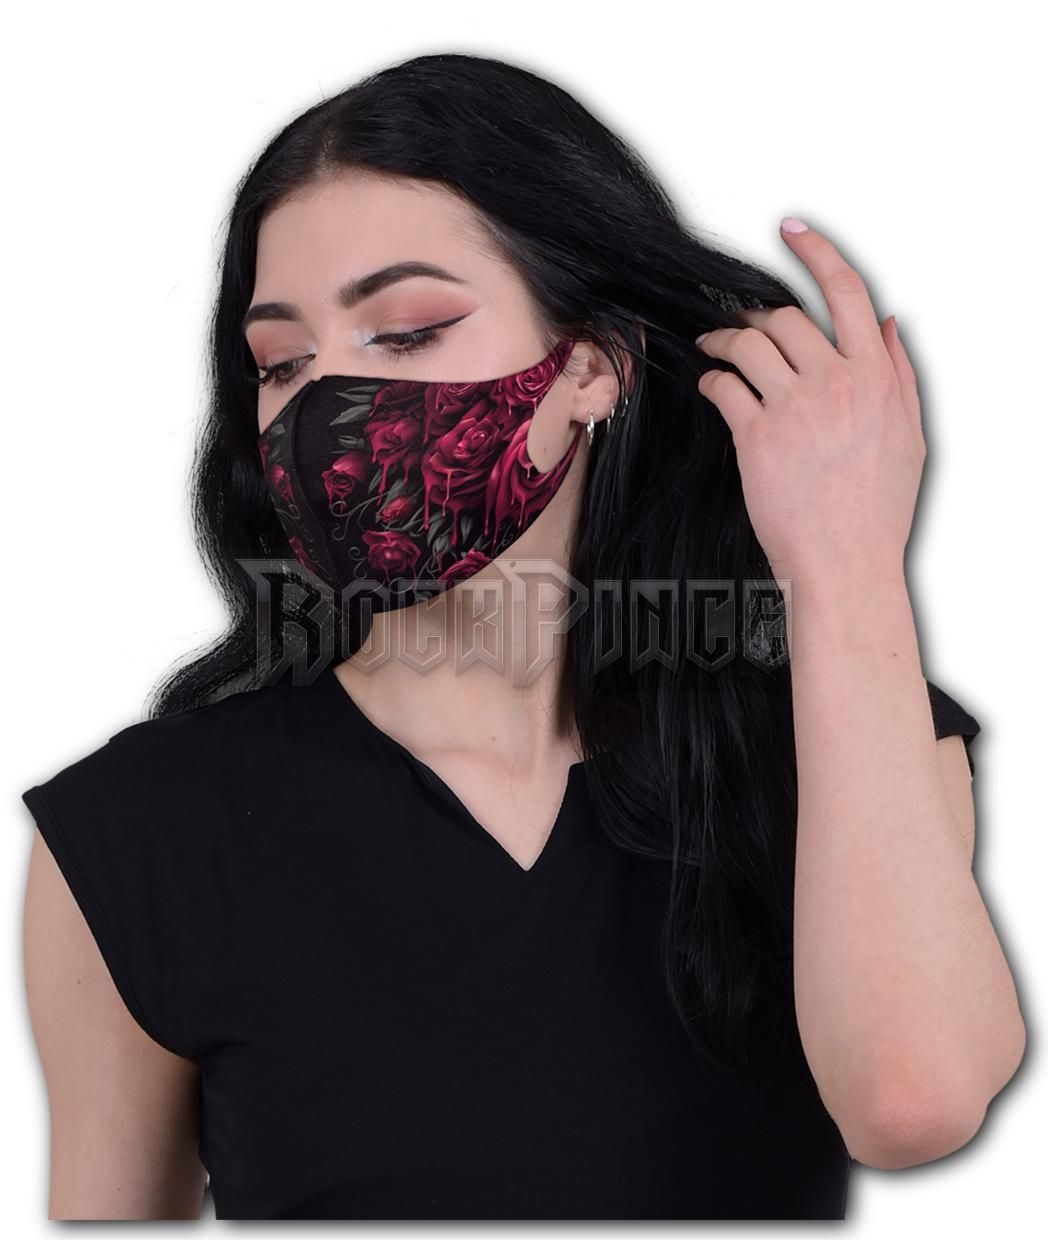 BLOOD ROSE - Protective Face Masks - K018A811